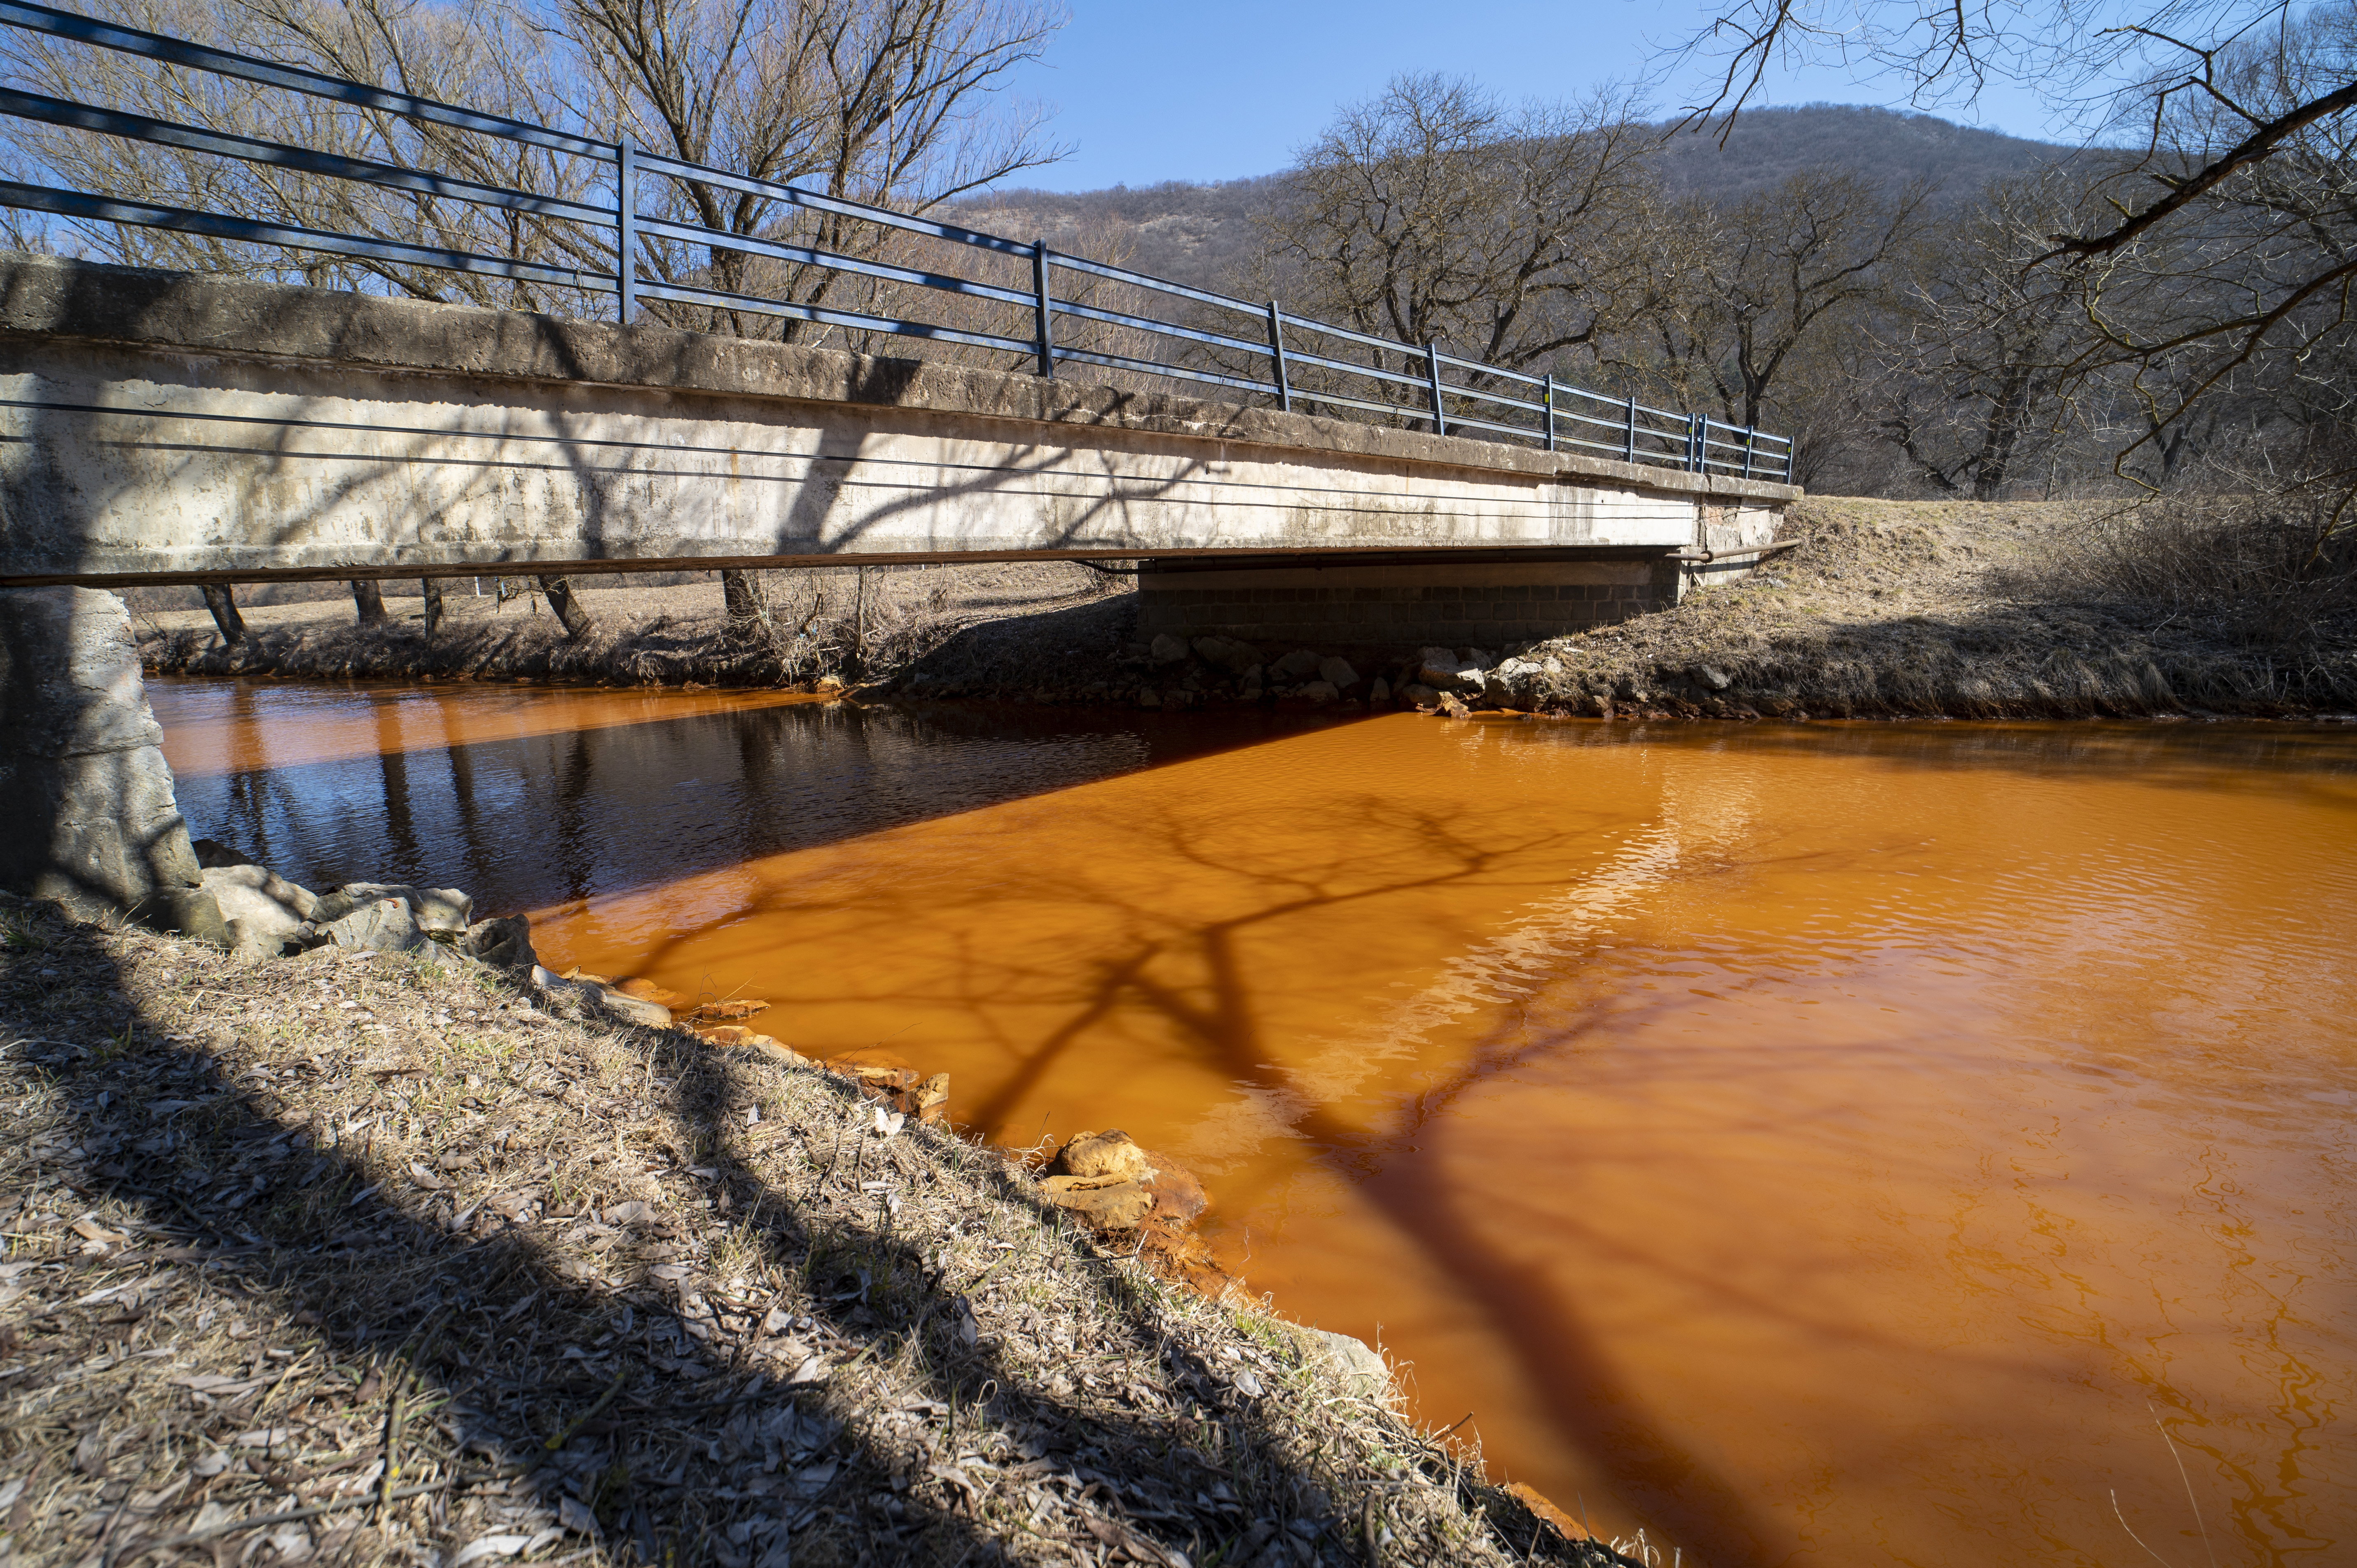 Megkezdik a mentést a Sajó szlovákiai szakaszán, ahol egy vasércbányából mos ki szennyeződéseket a folyó